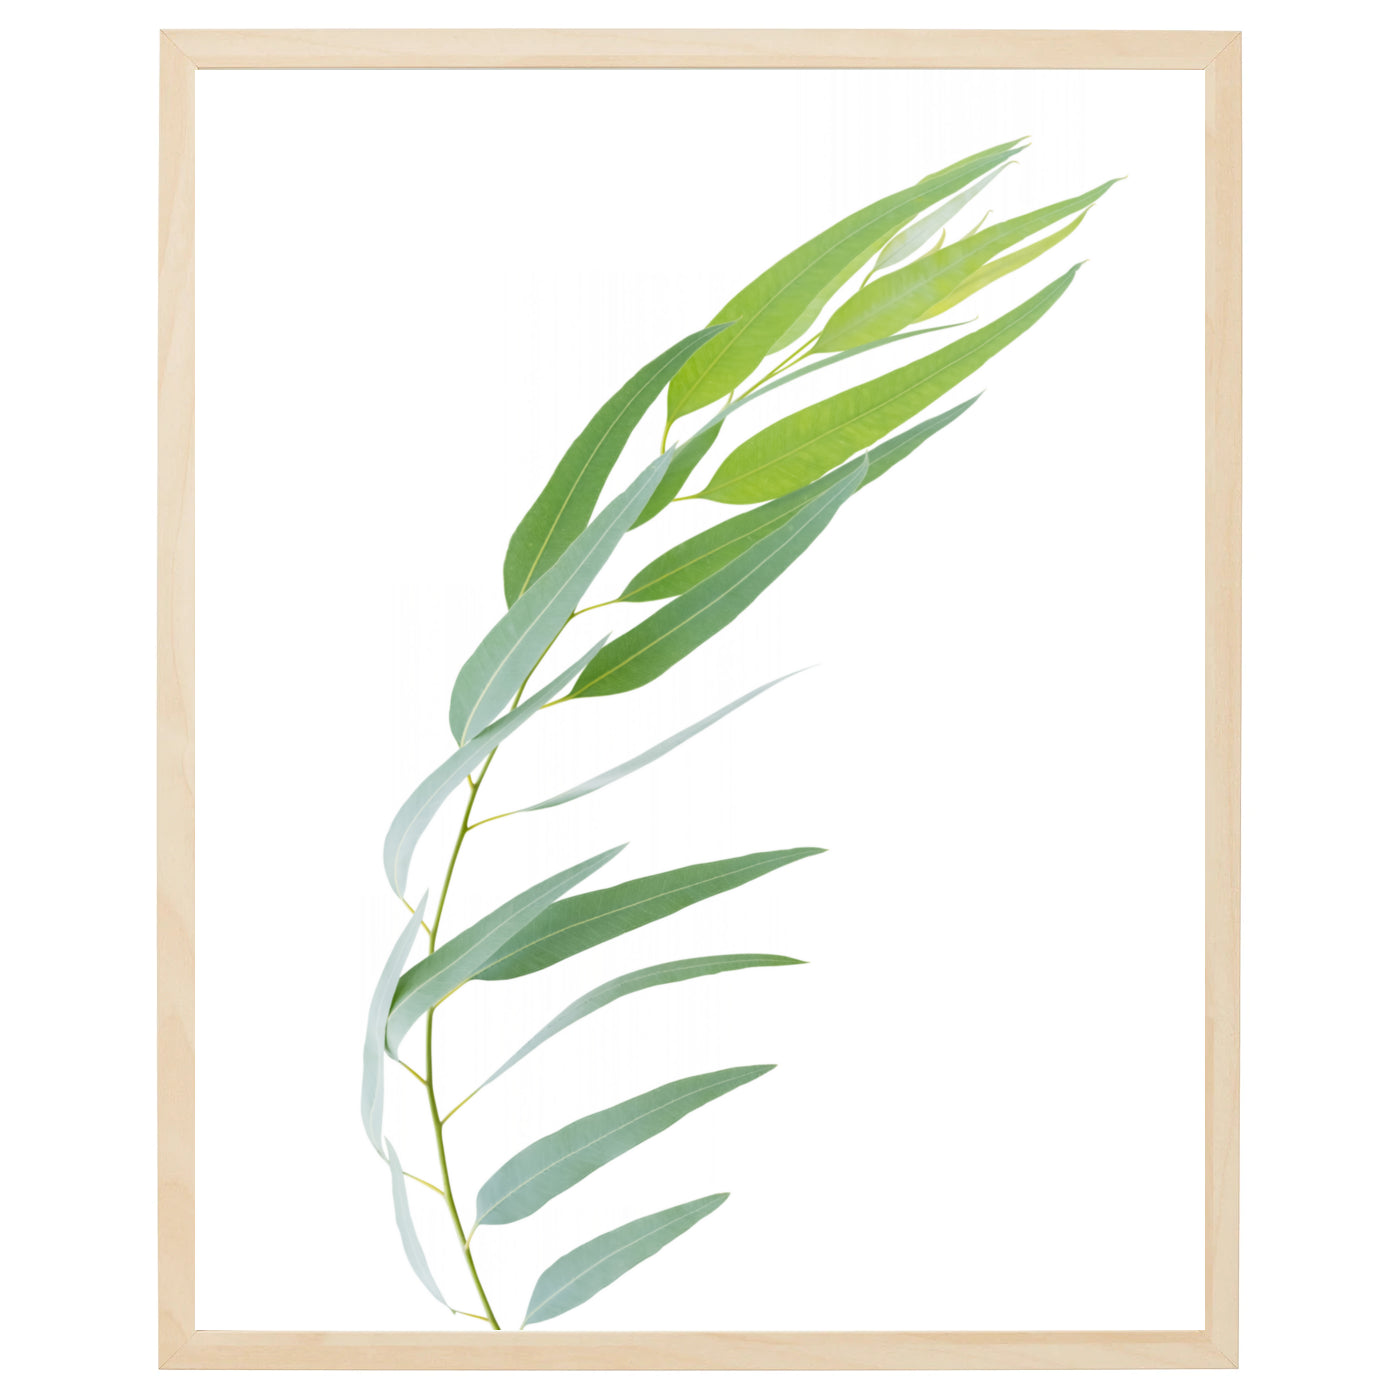 En plakat med en enkelt eukalyptusgren med grønne blade på en blød, grå baggrund. Grenen er skarp og detaljeret, og hver eneste blad kan tydeligt ses med sin karakteristiske aflange form og bløde, grønne farve. Plakaten er perfekt til en minimalistisk eller naturinspireret indretning, og dens beroligende effekt vil skabe en afslappende atmosfære i ethvert rum.